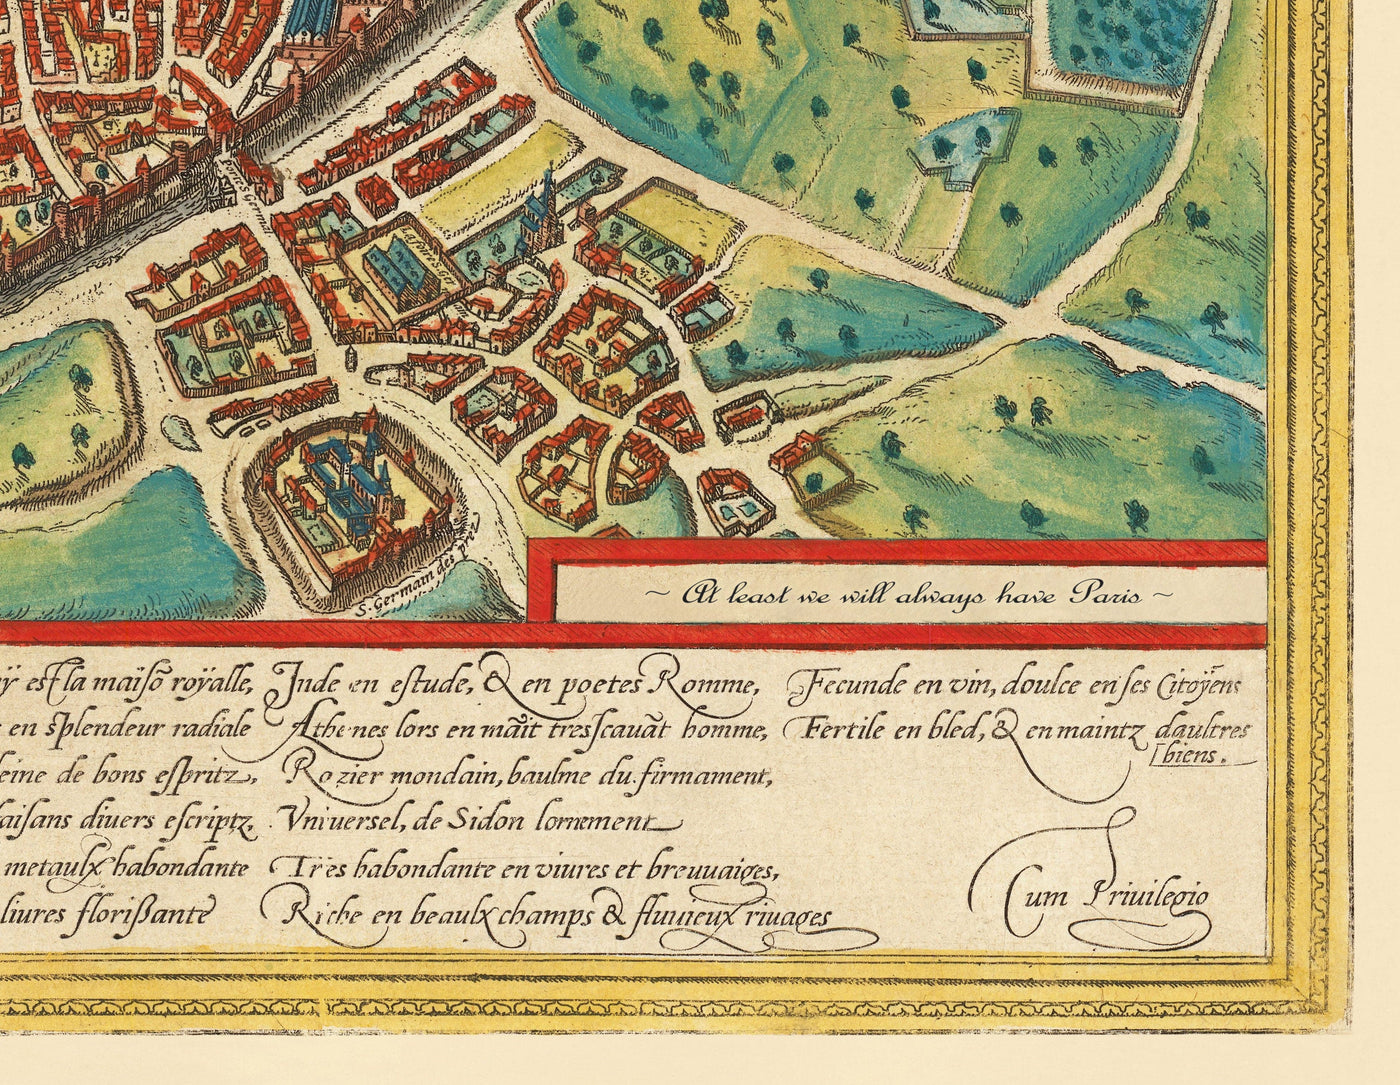 Viejo Mapa de Roma, 1572 de Braun - Ciudad del Vaticano, Palacio de Papal, Foro, Panteón, Ruinas antiguas, Coliseo